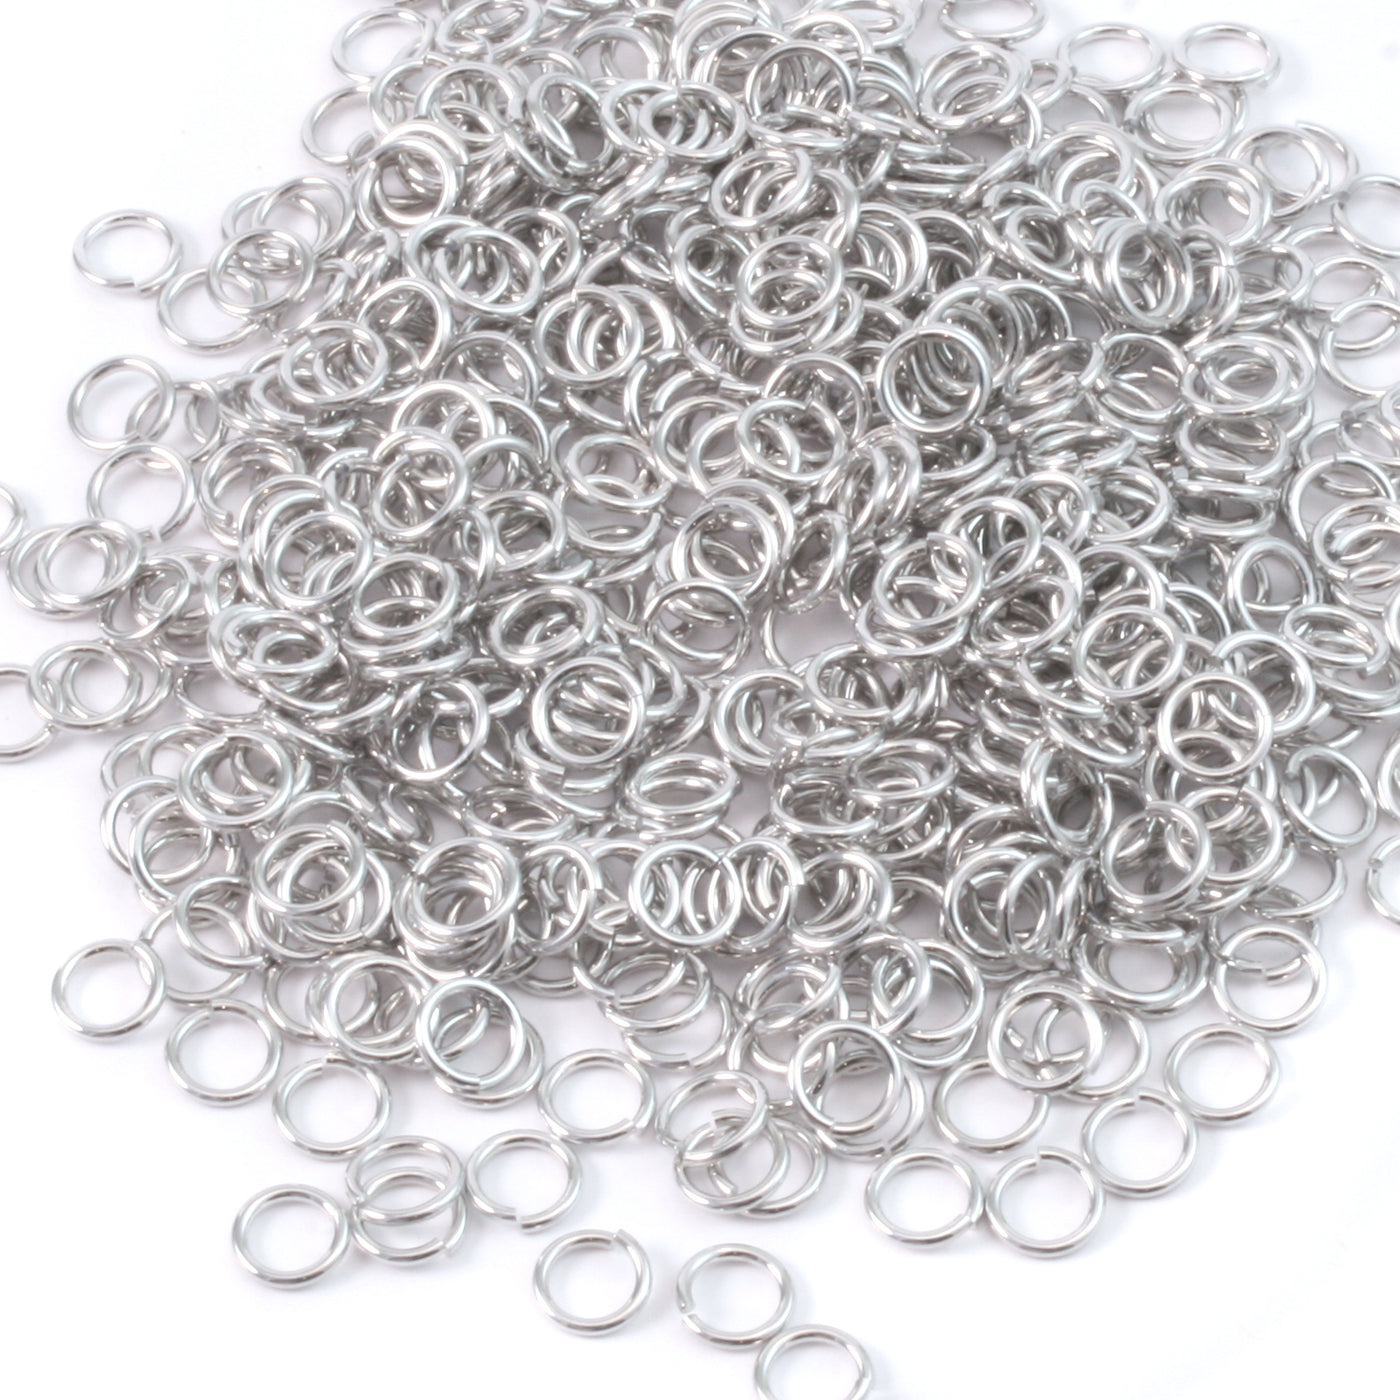 Aluminum 4mm I.D. 18 Gauge Jump Rings, 1 oz (~578 rings) – Beaducation